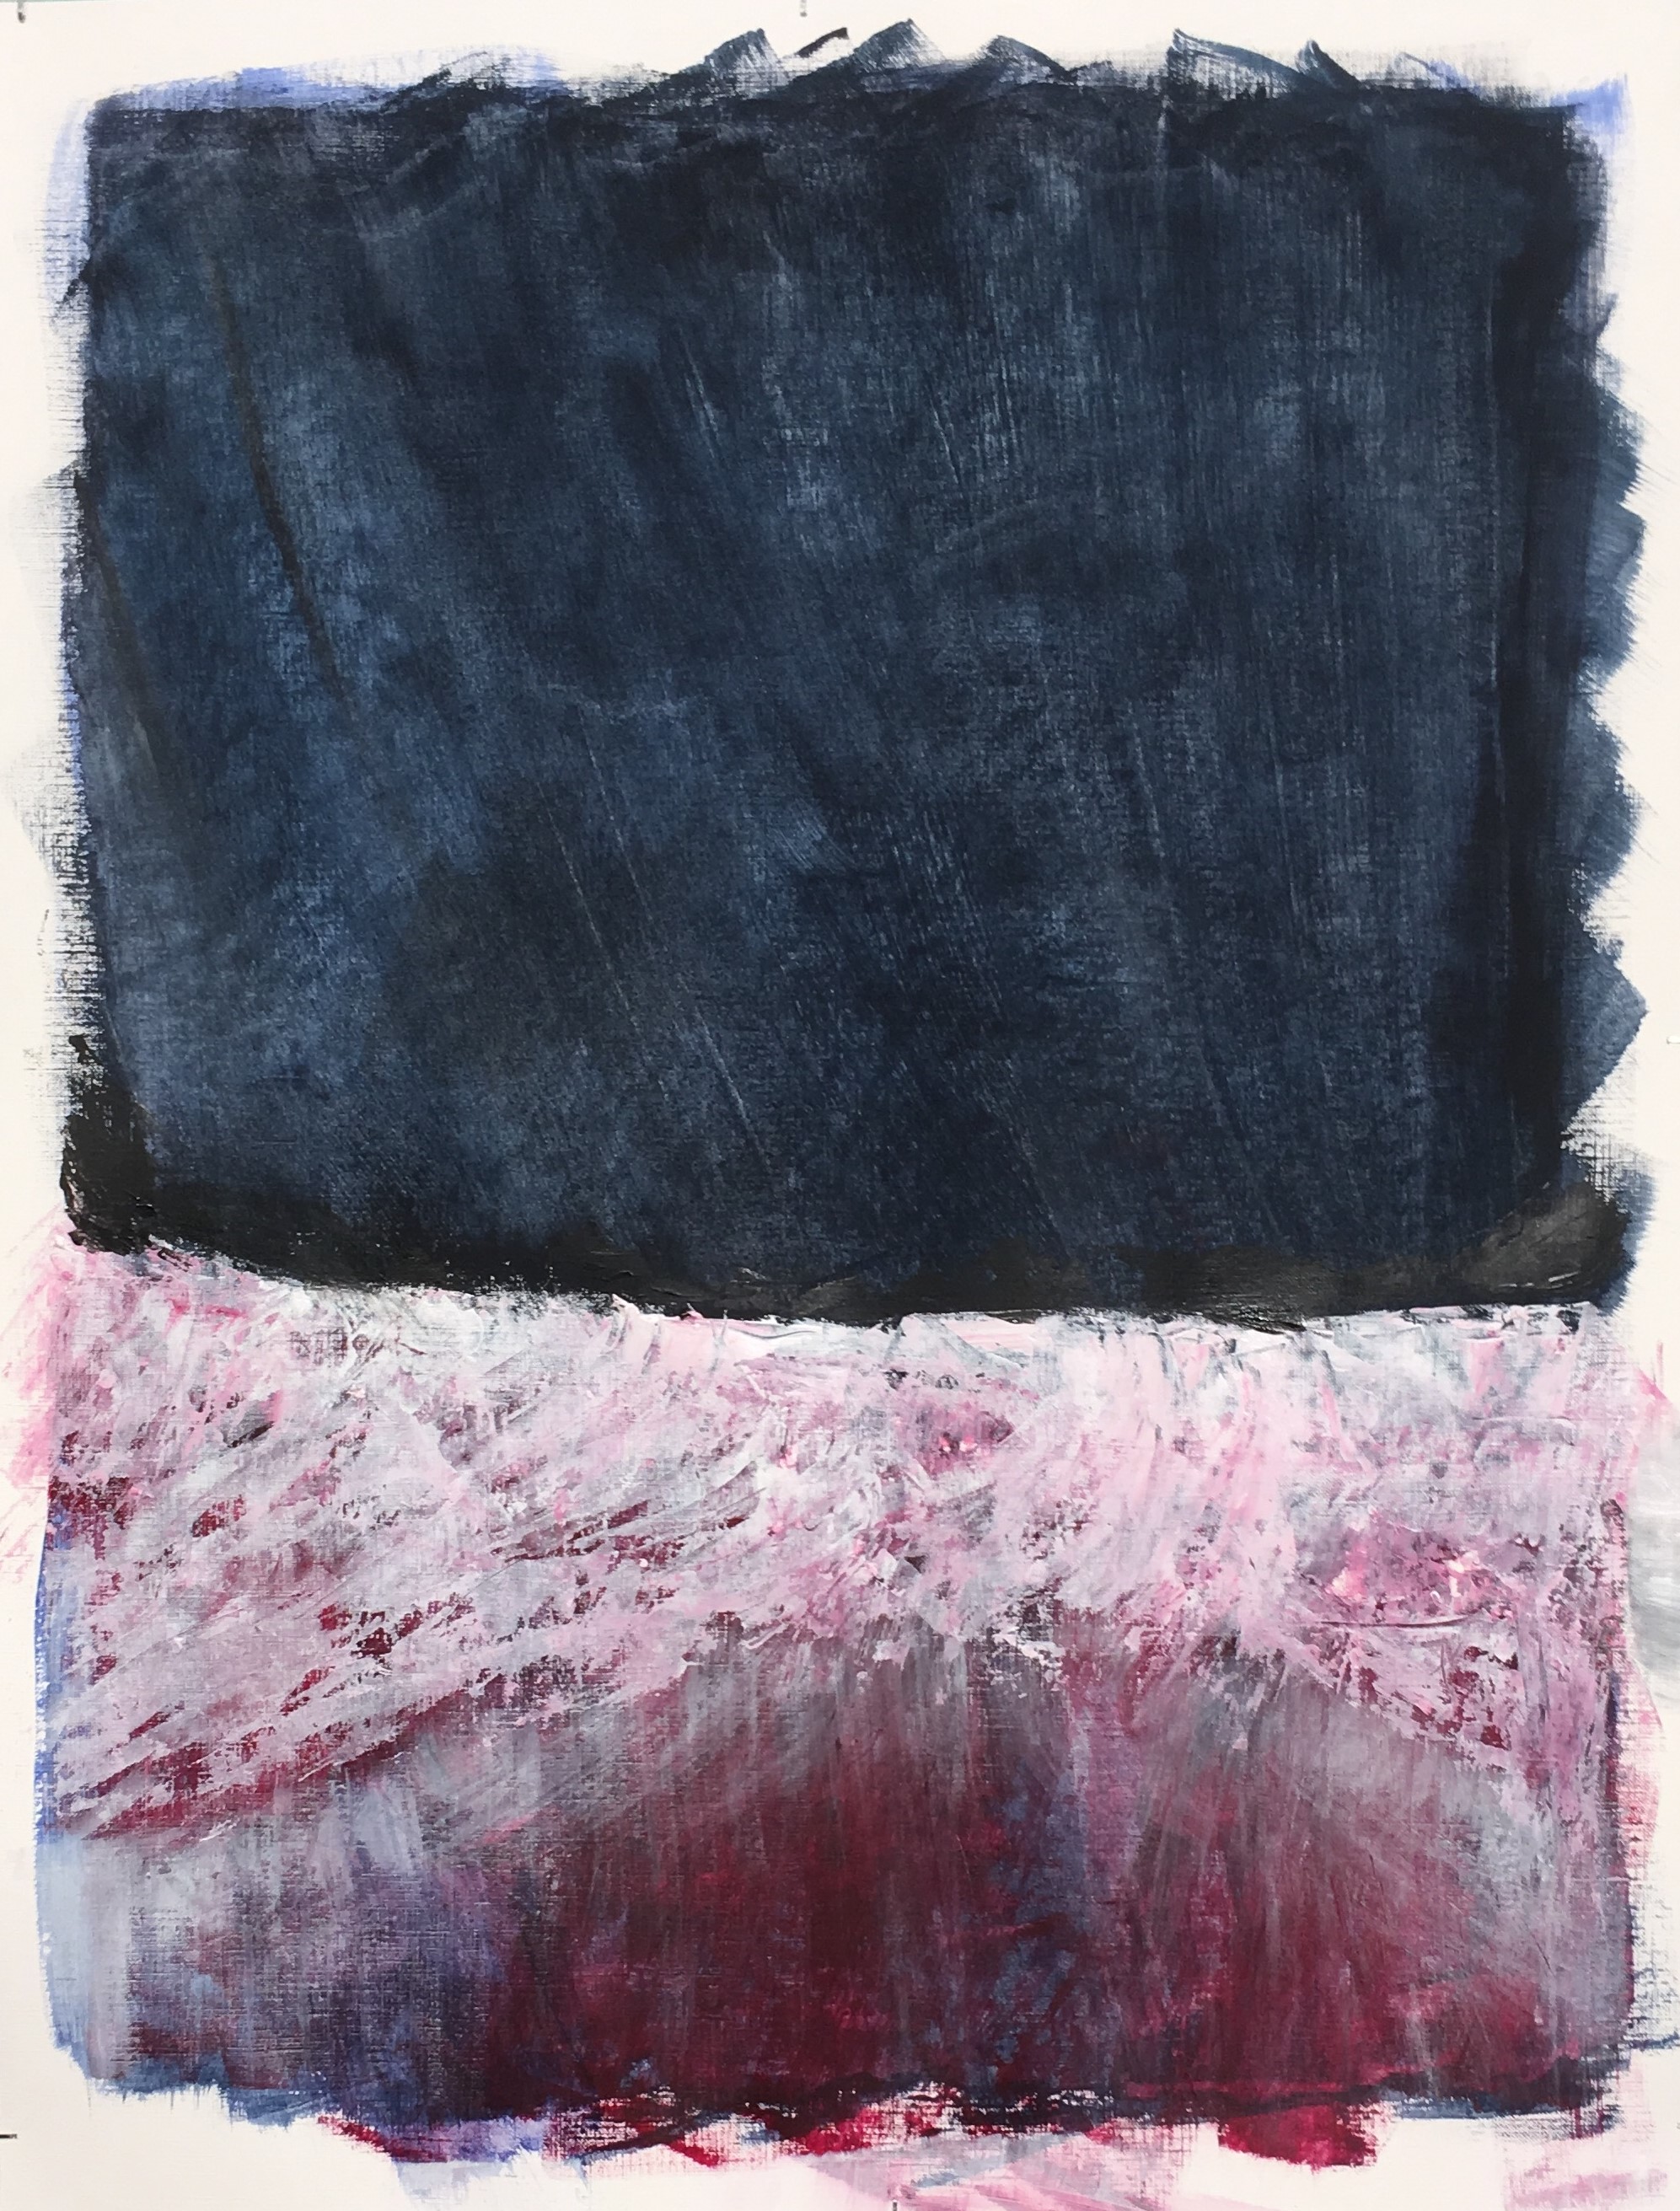 N° 7018 - Nuit polaire - Acrylique et pigments sur papier - 65 x 50 cm - 3 février 2020